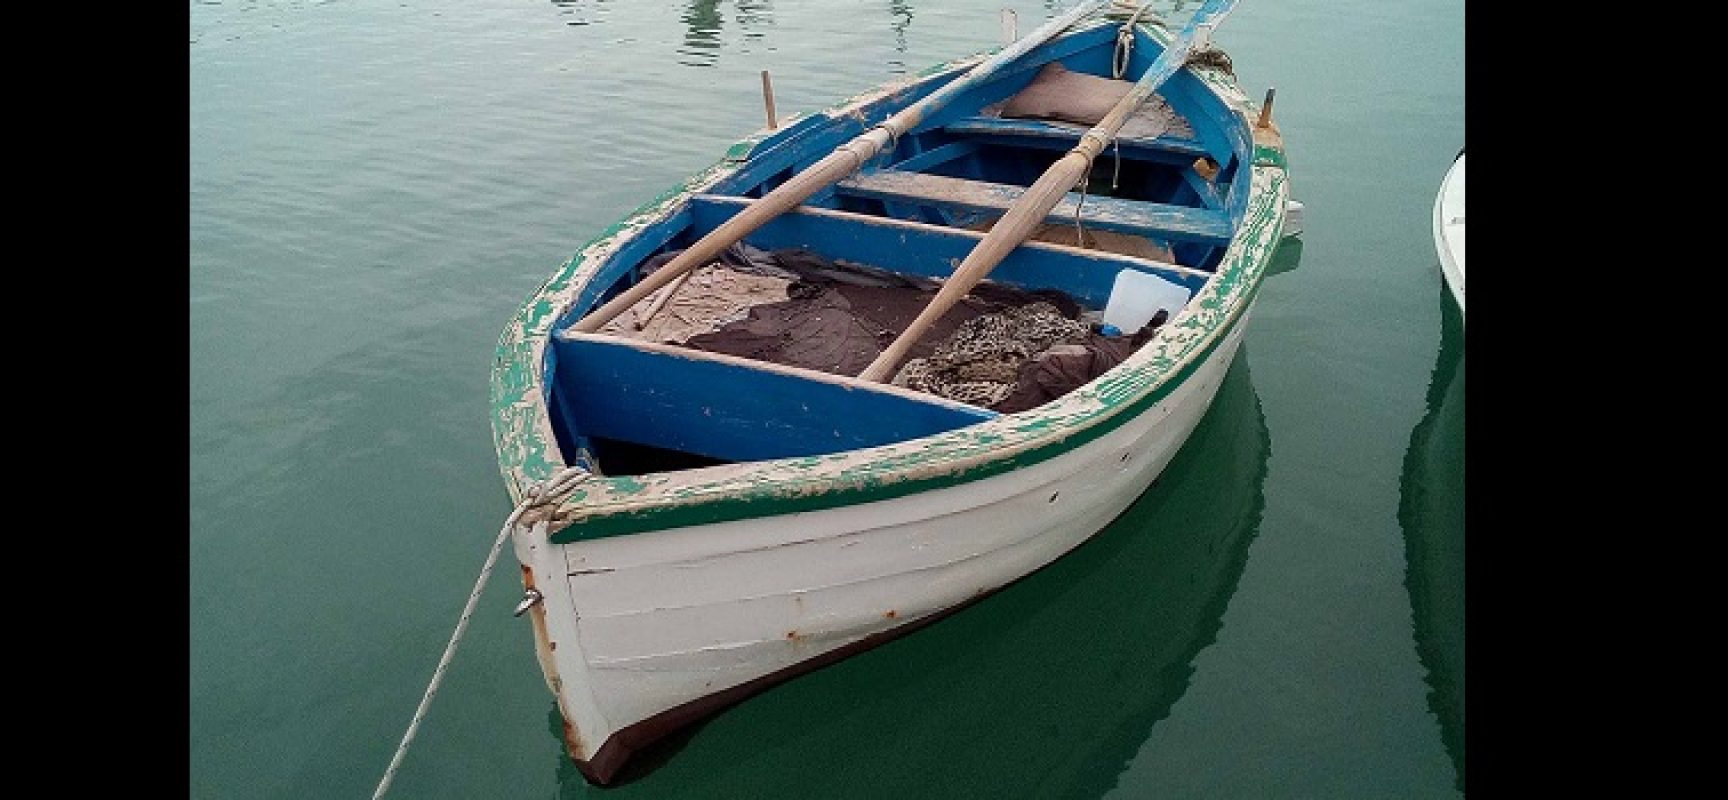 “L’imbarco dei Mille”, Iologico avvia crowdfunding per salvare un’imbarcazione storica